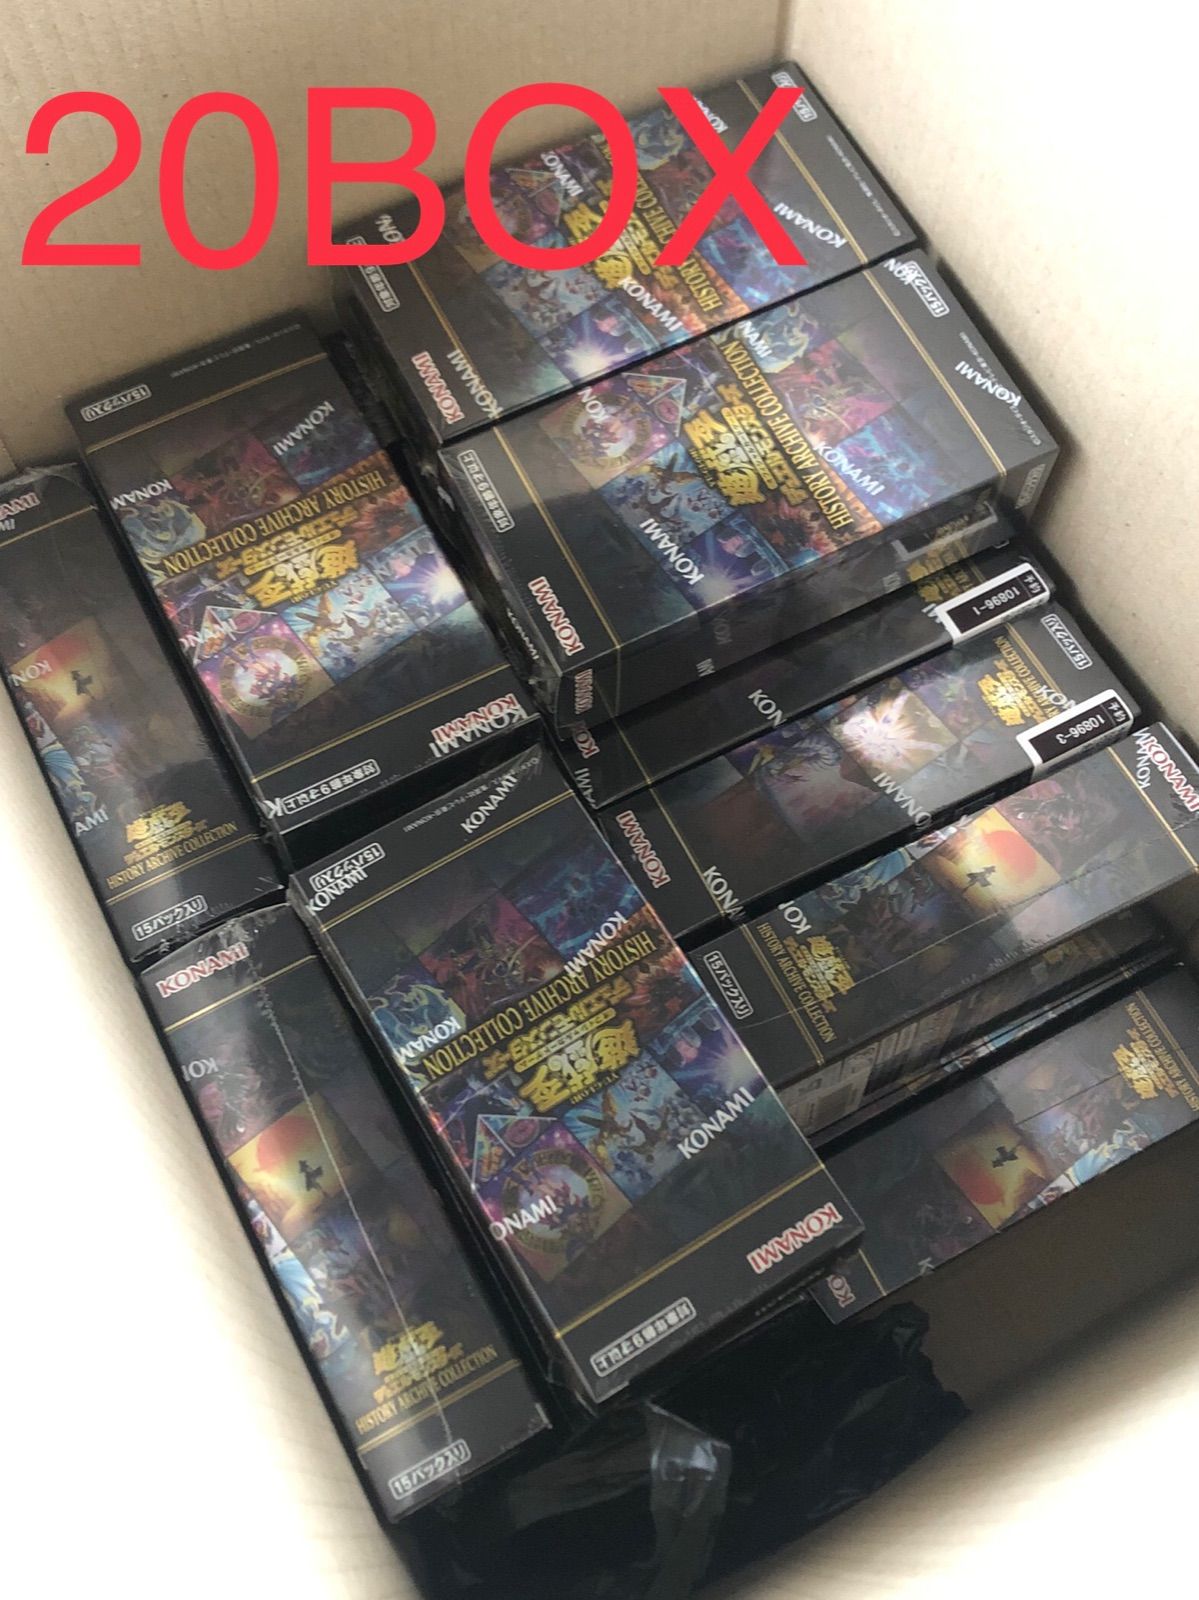 ヒストリーアーカイブコレクション 20box 新品未開封 遊戯王